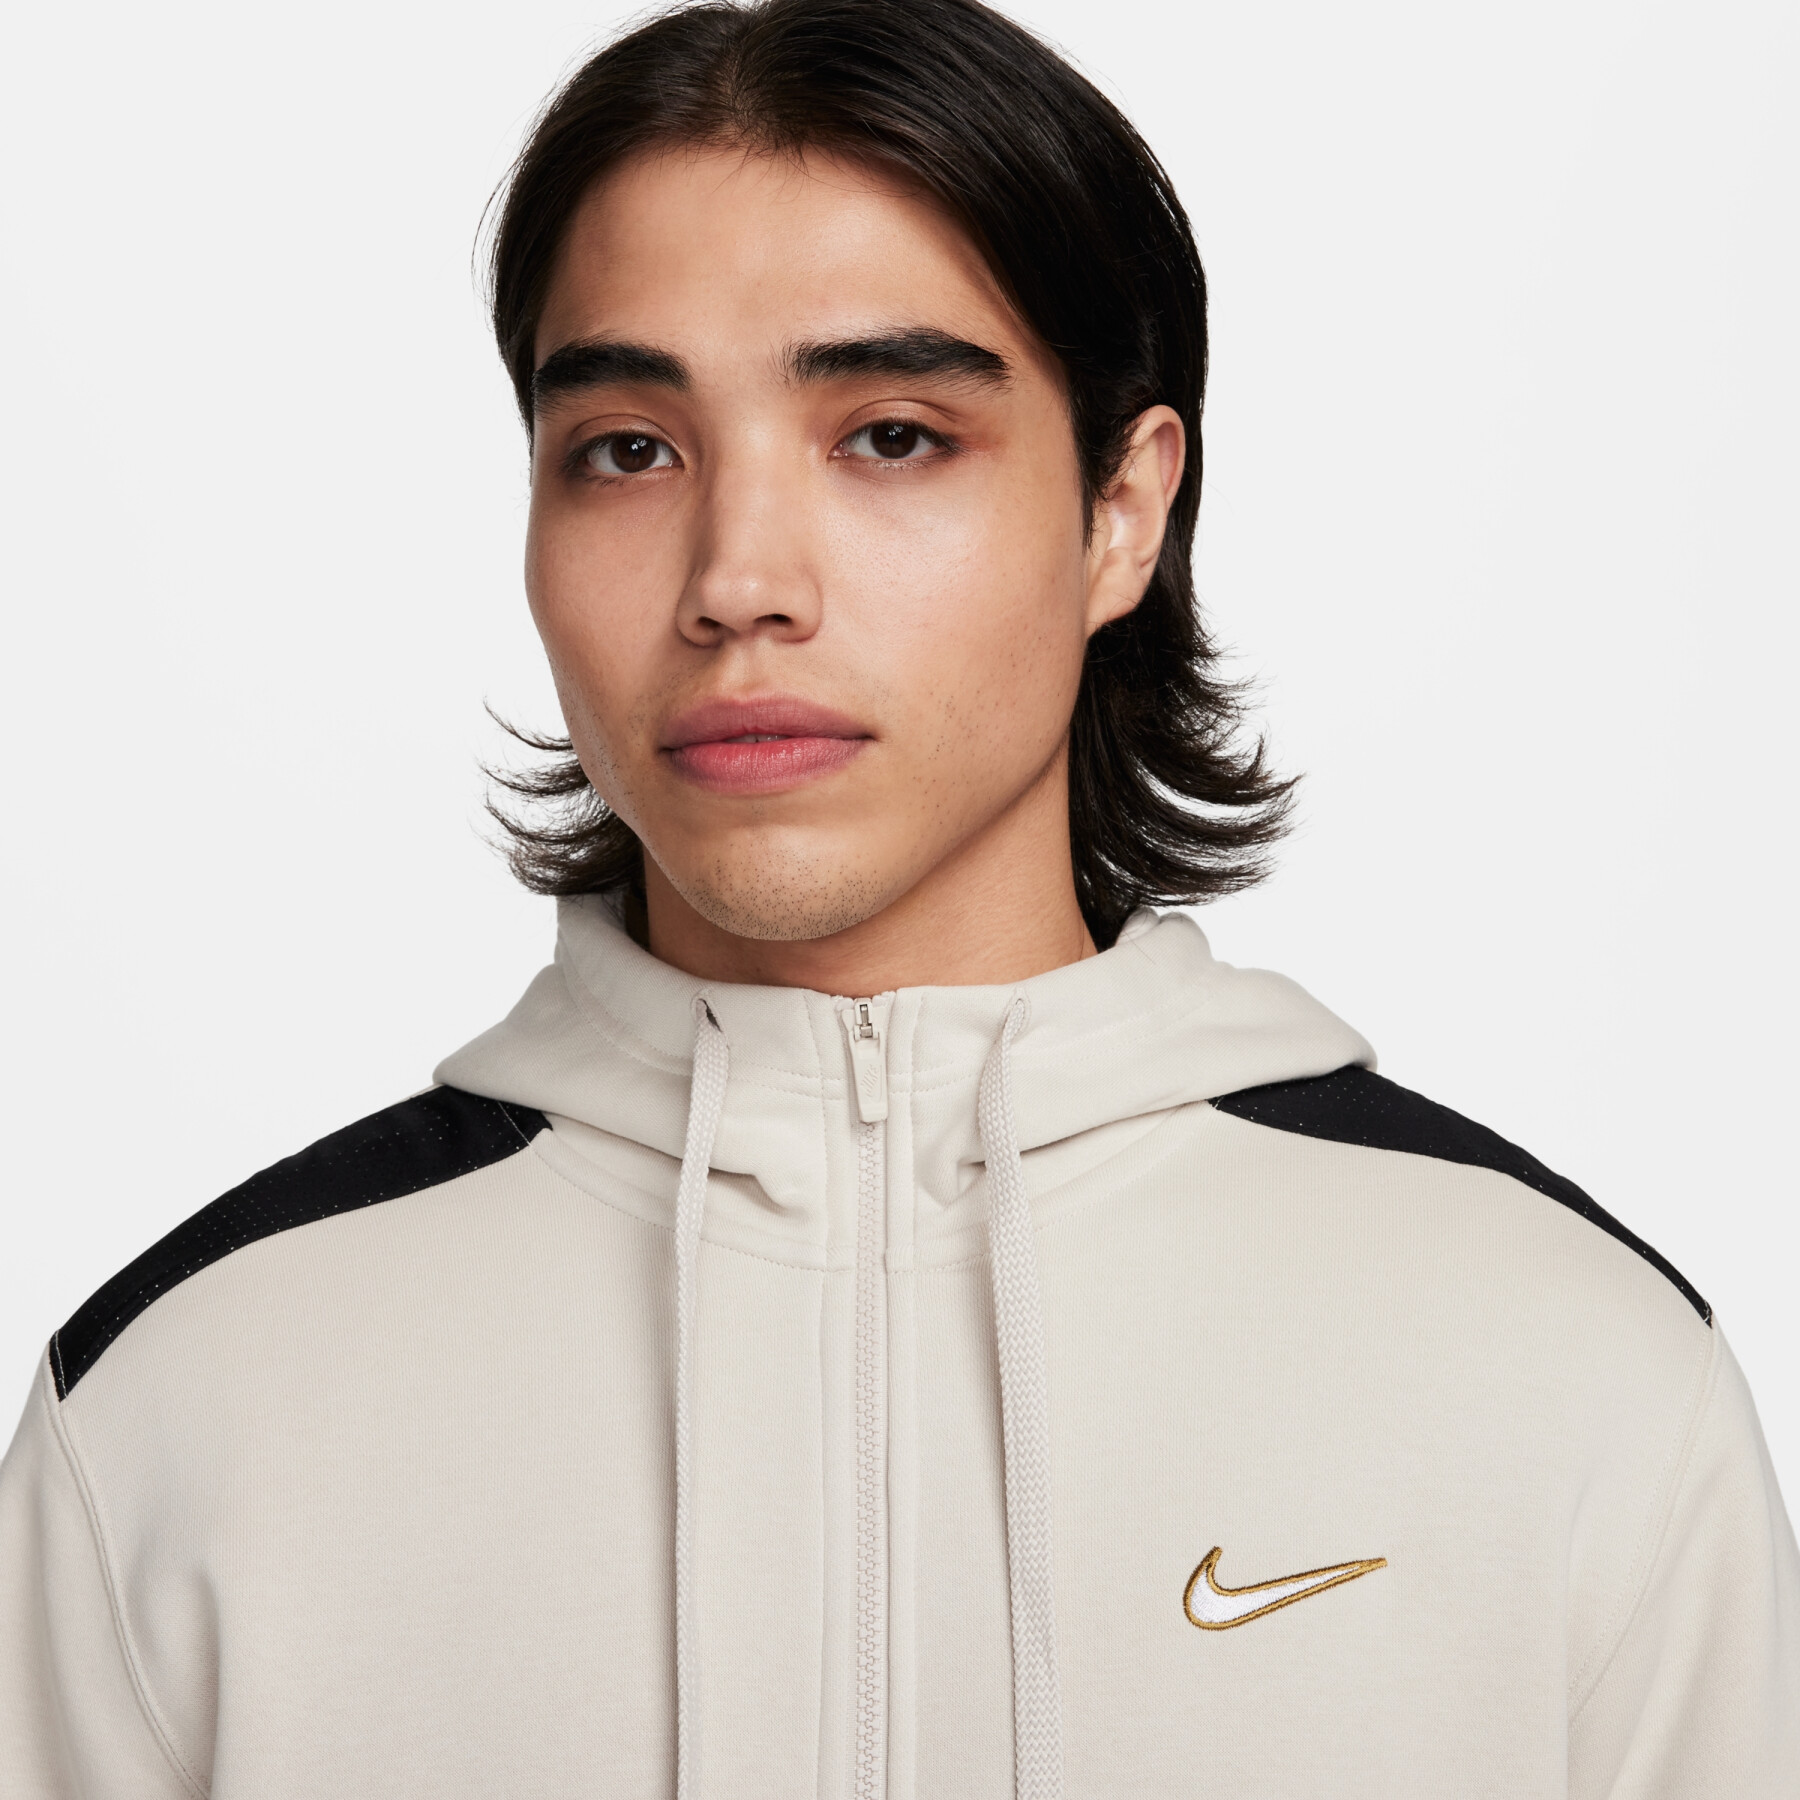 Hooded sweatshirt Nike